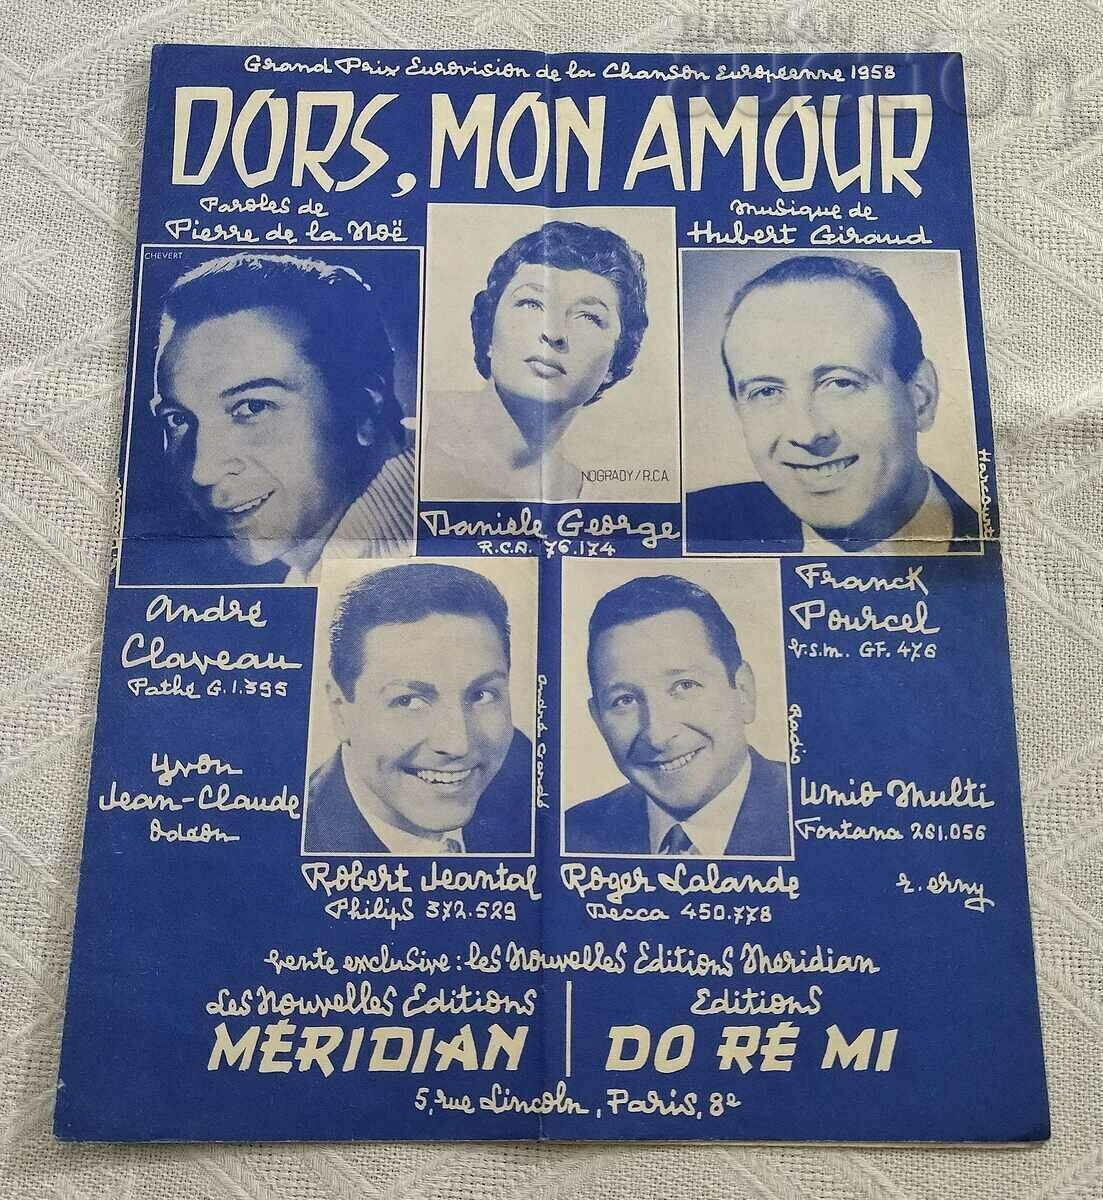 ΝΟΤΕΣ ΒΑΛΣ "DORS, MON AMOUR" 1958